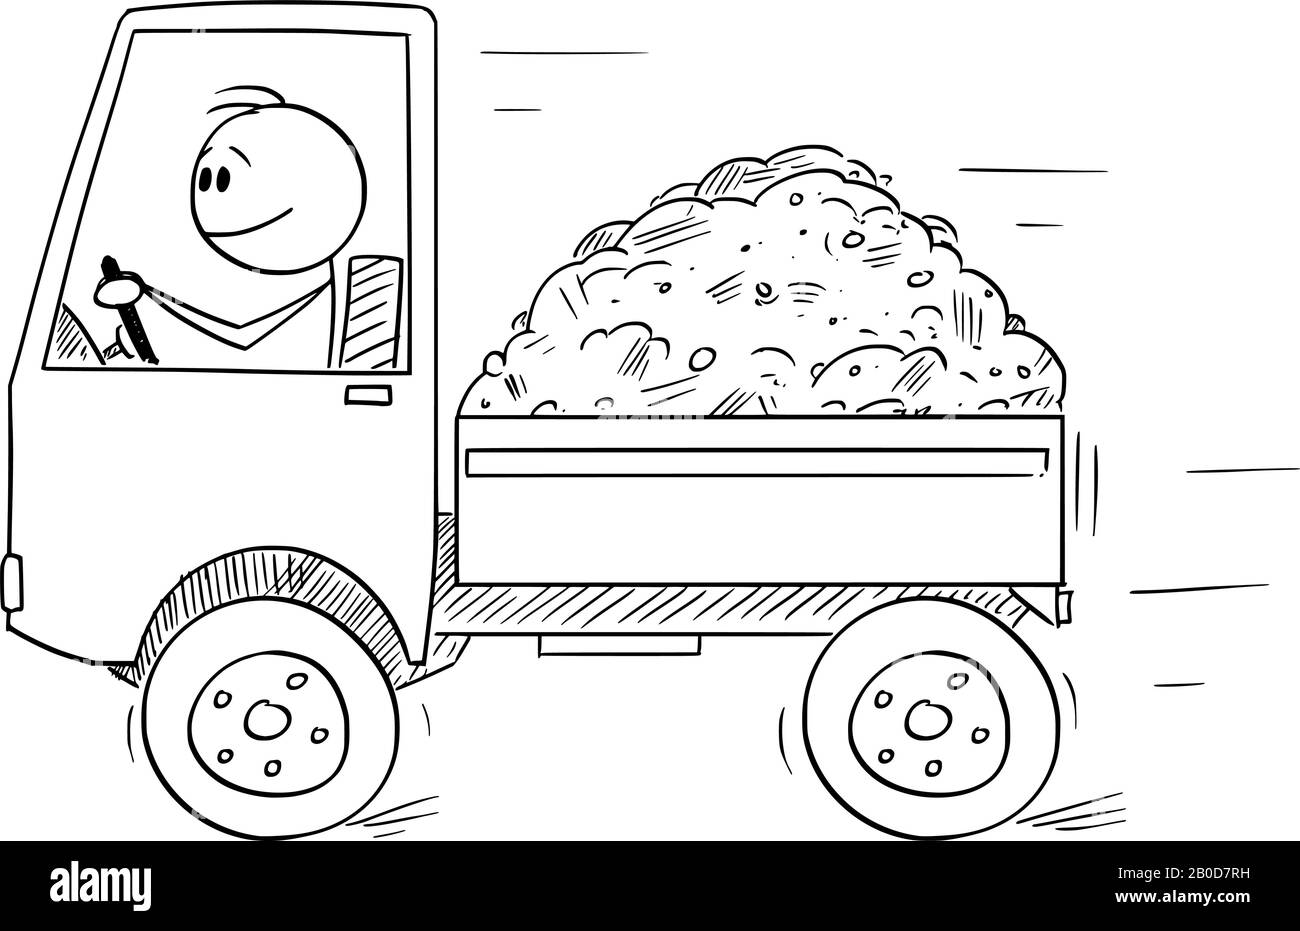 Figura del bastone del cartone animato vettoriale illustrazione concettuale di uomo sorridente o conducente che guida piccolo camion caricato da sabbia o suolo. Concetto di business nel settore dei trasporti o della logistica. Illustrazione Vettoriale